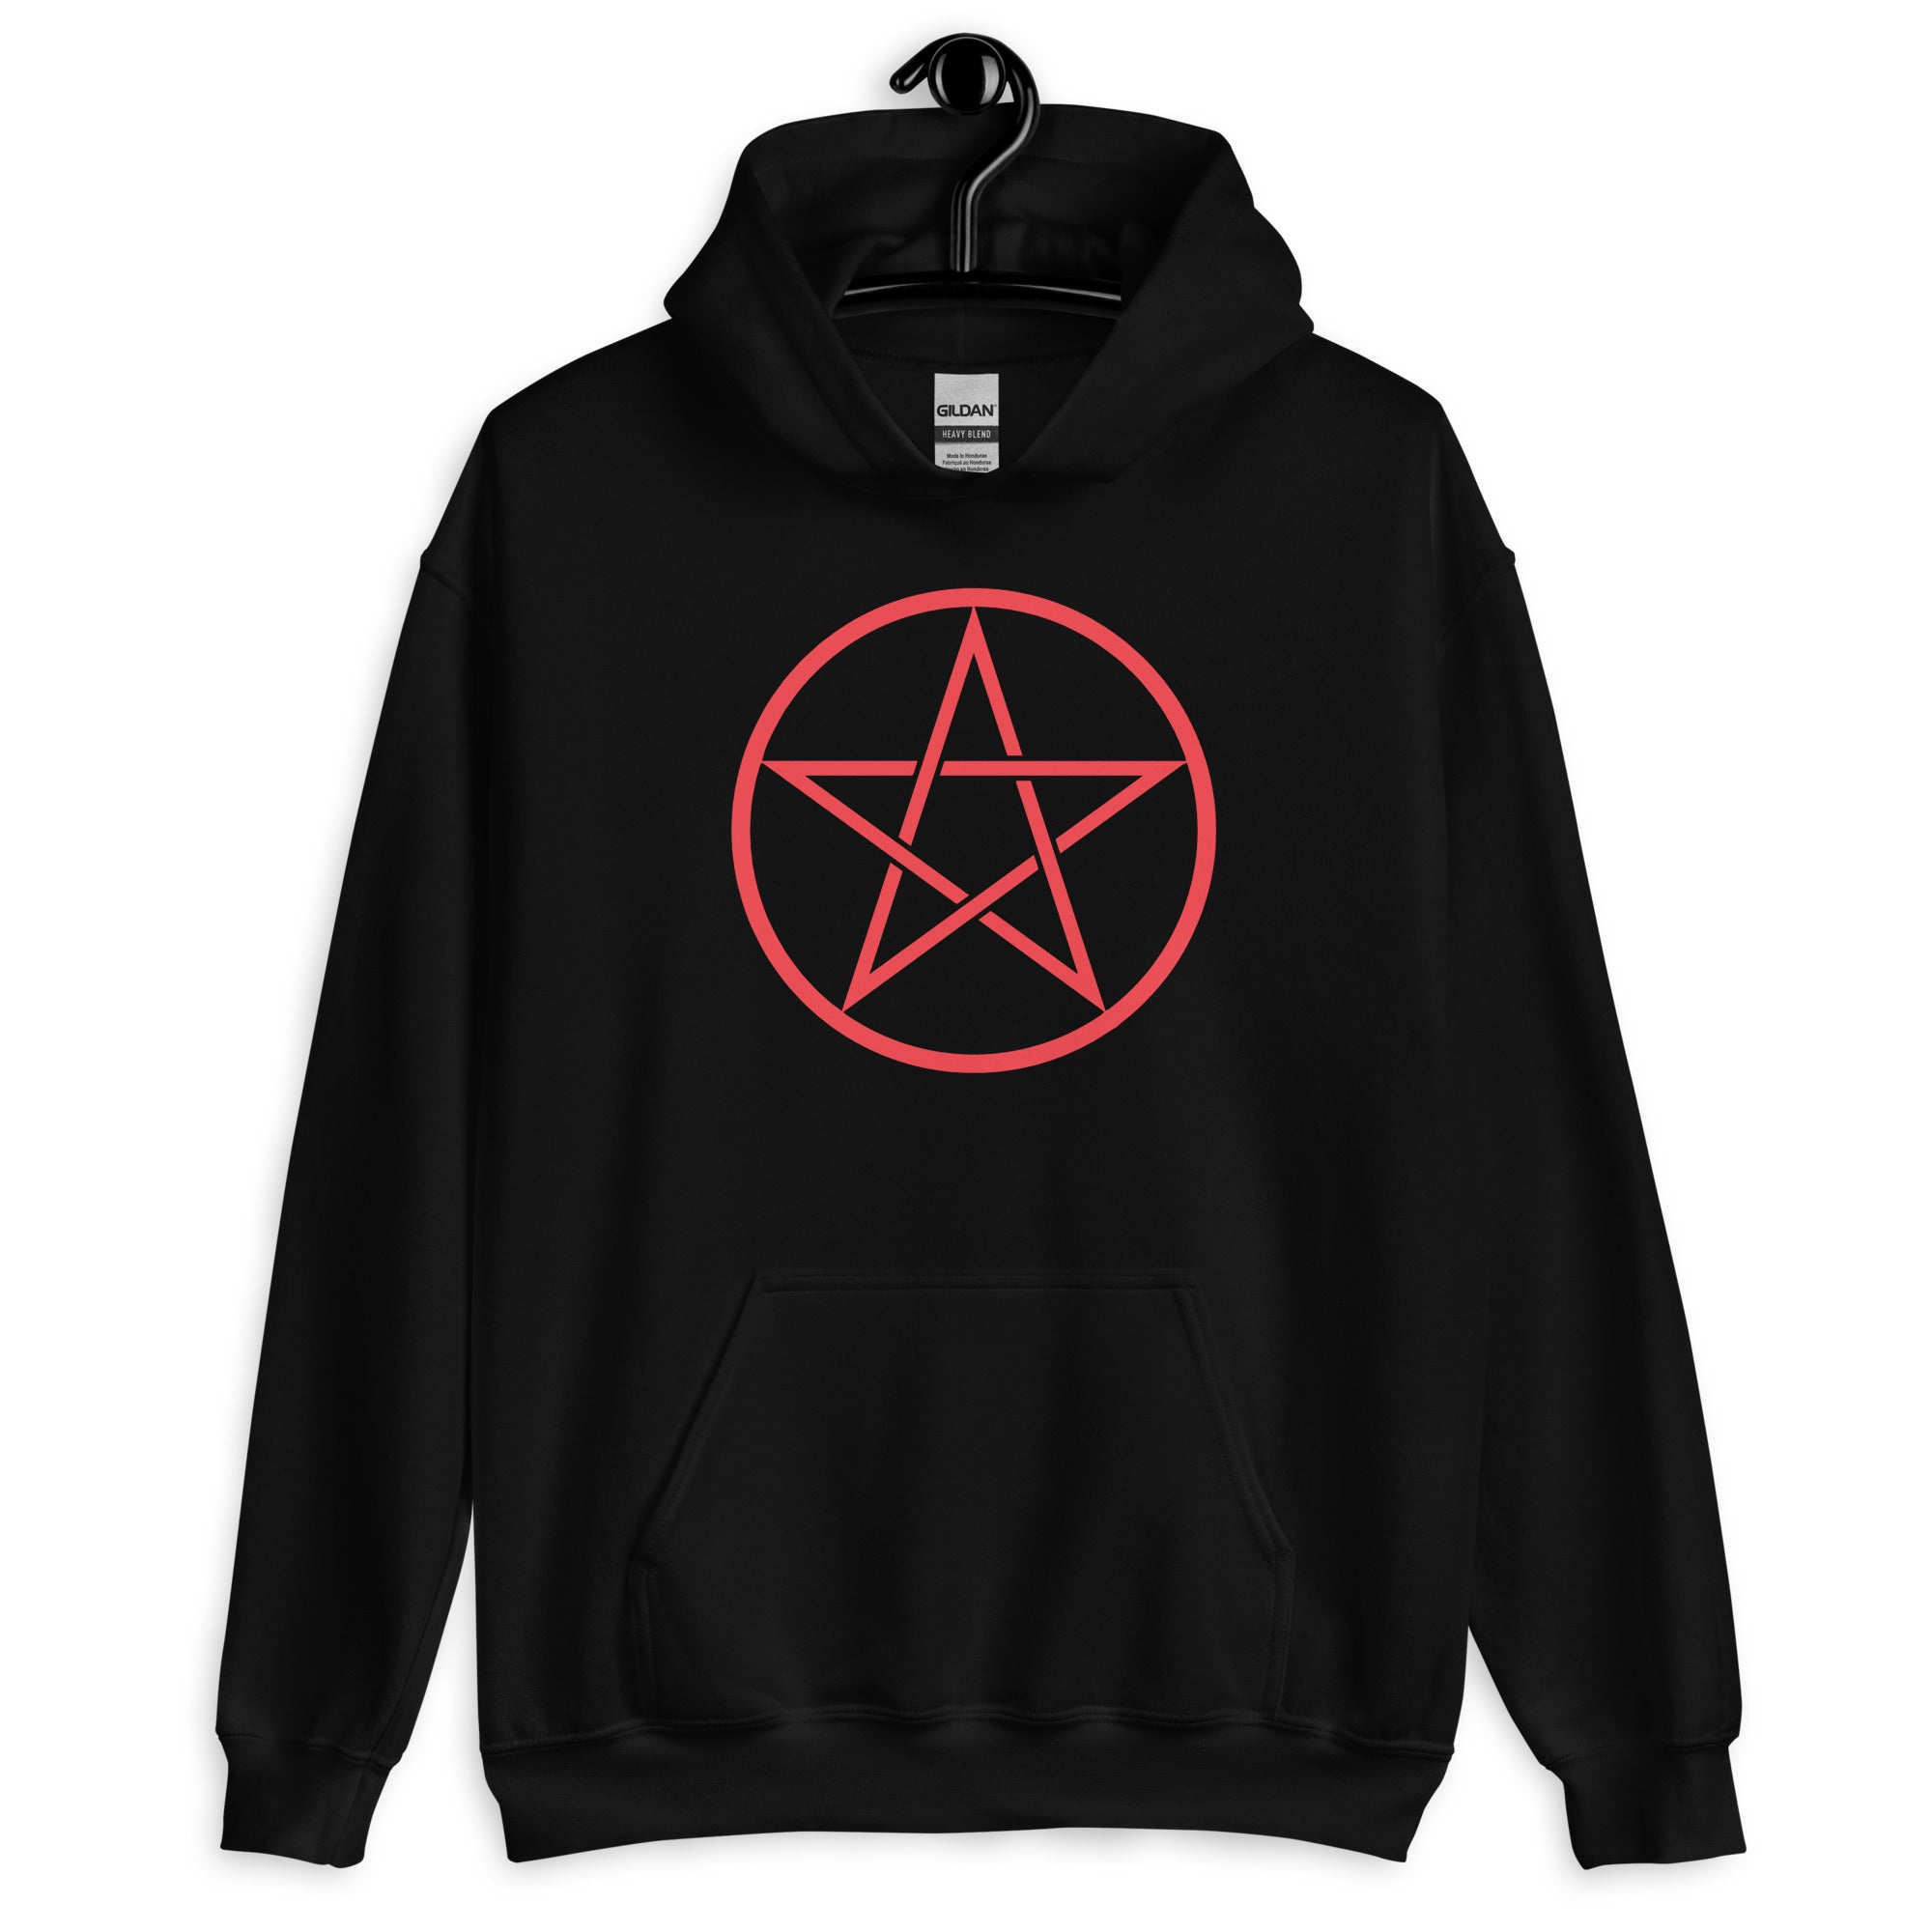 Red Goth Wiccan Woven Pentagram Unisex Hoodie Sweatshirt - Edge of Life Designs